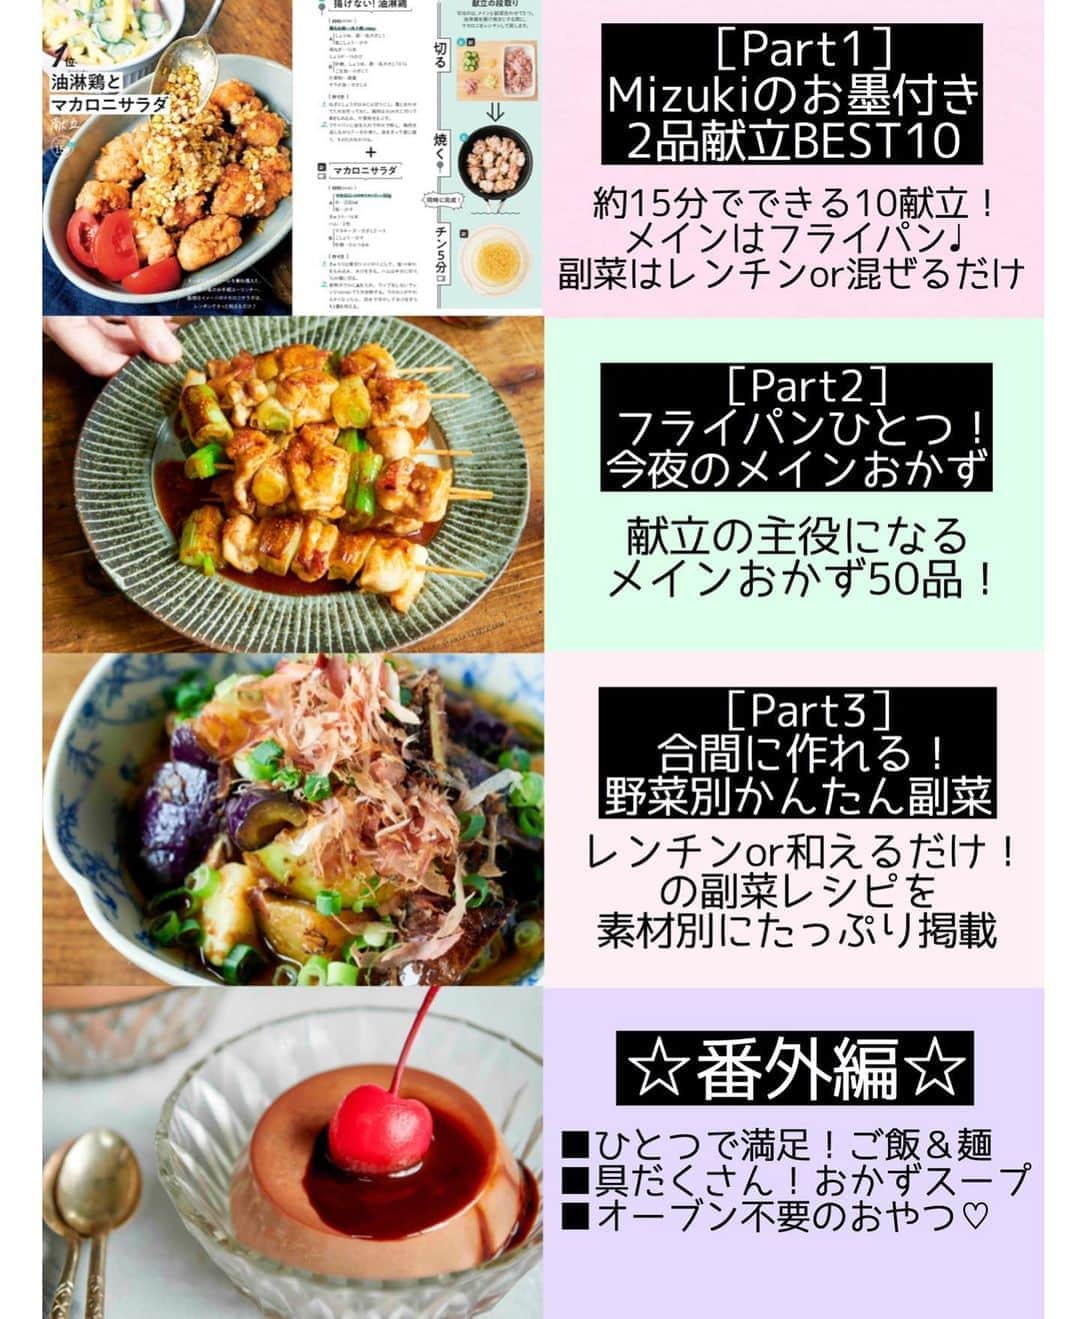 Mizuki【料理ブロガー・簡単レシピ】さんのインスタグラム写真 - (Mizuki【料理ブロガー・簡単レシピ】Instagram)「・﻿ 【レシピ】ーーーーーーーー﻿ ♡焼き鮭の香味だれがけ♡﻿ ーーーーーーーーーーーーー﻿ ﻿ ﻿ ﻿ おはようございます(*^^*)﻿ ﻿ 今日ご紹介させていただくのは﻿ リクエストいただいたお魚レシピ♩﻿ お手軽な鮭の切り身を焼いて﻿ 薬味たっぷりの香味だれをかけました♡﻿ さっぱり味で食べやすく﻿ 普通の焼き鮭より﻿ ボリュームもアップしますよ♩﻿ ﻿ フライパンで簡単にできるので﻿ よかったらお試し下さいね(*´艸`)﻿ ﻿ ﻿ ﻿ ＿＿＿＿＿＿＿＿＿＿＿＿＿＿＿＿＿＿＿＿﻿ 【2人分】﻿ 生鮭...2切れ﻿ 塩...少々﻿ 片栗粉...適量﻿ サラダ油...小2﻿ ●長ねぎ(みじん切り)...10cm﻿ ●生姜(みじん切り)...1/3かけ﻿ ●醤油・酢...各大1﻿ ●砂糖・ごま油...各大1/2﻿ サニーレタス...適量﻿ ﻿ 1.●を合わせて香味だれを作る。鮭は4等分に切り、塩を振って片栗粉をまぶす。﻿ 2.フライパンにサラダ油を中火で熱し、鮭を両面焼いて火を通す。﻿ 3.器にちぎったレタスと2を盛り付け、香味だれをかける。﻿ ￣￣￣￣￣￣￣￣￣￣￣￣￣￣￣￣￣￣￣￣﻿ ﻿ ﻿ ﻿ 《ポイント》﻿ ♦︎サーモンの切り身で作っても♩﻿ ♦︎塩鮭だと辛くなるので''生鮭''をご使用下さい♩﻿ ﻿ ﻿ ﻿ ﻿ ﻿ ﻿ _____________________________________﻿ 💓新刊予約開始しました💓﻿ Amazon予約キャンペーン実施中🎁﻿ ￣￣￣￣￣￣￣￣￣￣￣￣￣￣￣￣￣﻿ \15分でいただきます/﻿ #Mizukiの2品献立﻿ (9月24日発売・マガジンハウス)﻿ ﻿ 忙しい私たちには﻿ 2品くらいがちょうどいい！﻿ 『しんどくない献立、考えました』﻿ ￣￣￣￣￣￣￣￣￣￣￣￣￣￣￣￣﻿ ﻿ メインはフライパン﻿ 副菜はレンジ(又は和えるだけ)の2品献立💕﻿ メインを作っている合間にできる﻿ レンチン副菜を組み合わせることで﻿ 15分で2品が同時に完成します！﻿ (別腹デザートも掲載😂)﻿ ﻿ ﻿ 【contents】﻿ ーーーーーPART.1 ーーーーー﻿ 【Mizukiのお墨つき！２品献立ベスト10】﻿ 約15分でできる10献立をご紹介！﻿ メインは全部フライパン、副菜はレンチンor混ぜるだけ♡﻿ ﻿ ーーーーーPART.2 ーーーーー﻿ 【フライパンひとつ！今夜のメインおかず】﻿ 献立の主役になる肉や魚のおかず50品！﻿ Part3の副菜と組み合わせれば﻿ 献立のバリエーションが広がりますよ♩﻿ ﻿ ーーーーー PART.3 ーーーーー﻿ 【合間に作れる！ 野菜別かんたん副菜】﻿ レンチンor和えるだけの副菜レシピを﻿ 素材別にたっぷり収録♩﻿ ﻿ ーーーーー番外編ーーーーー﻿ 【ひとつで満足！ご飯＆麺】﻿ 【具だくさん！おかずスープ】﻿ 【オーブンいらずのおやつレシピ】﻿ ￣￣￣￣￣￣￣￣￣￣￣￣￣￣￣￣￣￣﻿ ﻿ ﻿ 🎁🎁🎁🎁🎁🎁🎁🎁🎁🎁🎁🎁﻿ Amazon予約プレゼントキャンペーン﻿ 🎁🎁🎁🎁🎁🎁🎁🎁🎁🎁🎁🎁﻿ ﻿ 皆様に感謝の気持ちを込めて﻿ ご用意させていただきました✨﻿ 私が普段から愛用している﻿ 本当に使いやすいおすすめグッズです💕﻿ ﻿ ＿＿＿＿＿＿＿＿＿＿＿＿＿＿＿＿＿﻿ 新刊【2品献立】をAmazonで予約し﻿ インスタにアップして下さった方に﻿ 抽選で［フライパン］or［ボールセット］を﻿ プレゼントさせていただきます♩﻿ ￣￣￣￣￣￣￣￣￣￣￣￣￣￣￣￣￣﻿ ﻿ ✅【インスタ応募方法▼】﻿ ①本の表紙の画像を1枚目に、﻿ Amazonで予約したことがわかる画像を﻿ 2枚目に貼り付け(どちらもスクショでOK)﻿ ［#Mizukiの2品献立 ］のハッシュタグを付けて投稿！﻿ 以上で応募完了です(*^^*)﻿ (詳しくは最後のPicをご覧下さい😊)﻿ ﻿ ￣￣￣￣￣￣￣￣￣￣￣￣￣￣￣￣￣￣﻿ ハイライトにリンク🔗あります💓﻿ ﻿ ﻿ ﻿ ﻿ ﻿ ﻿ ￣￣￣￣￣￣￣￣￣￣￣￣￣￣￣￣￣￣﻿ レシピを作って下さった際や﻿ レシピ本についてのご投稿には﻿ タグ付け( @mizuki_31cafe )して﻿ お知らせいただけると嬉しいです😊💕﻿ ＿＿＿＿＿＿＿＿＿＿＿＿＿＿＿＿＿＿﻿ ﻿ ﻿ ﻿ ﻿ ﻿ #鮭#魚#切り身#Mizuki#簡単レシピ#時短レシピ#節約レシピ#料理#レシピ#フーディーテーブル#マカロニメイト#おうちごはん#デリスタグラマー#料理好きな人と繋がりたい#食べ物#料理記録#おうちごはんlover#写真好きな人と繋がりたい#foodpic#cooking#recipe#lin_stagrammer#foodporn#yummy#f52grams#焼き鮭の香味だれがけm」9月10日 6時49分 - mizuki_31cafe